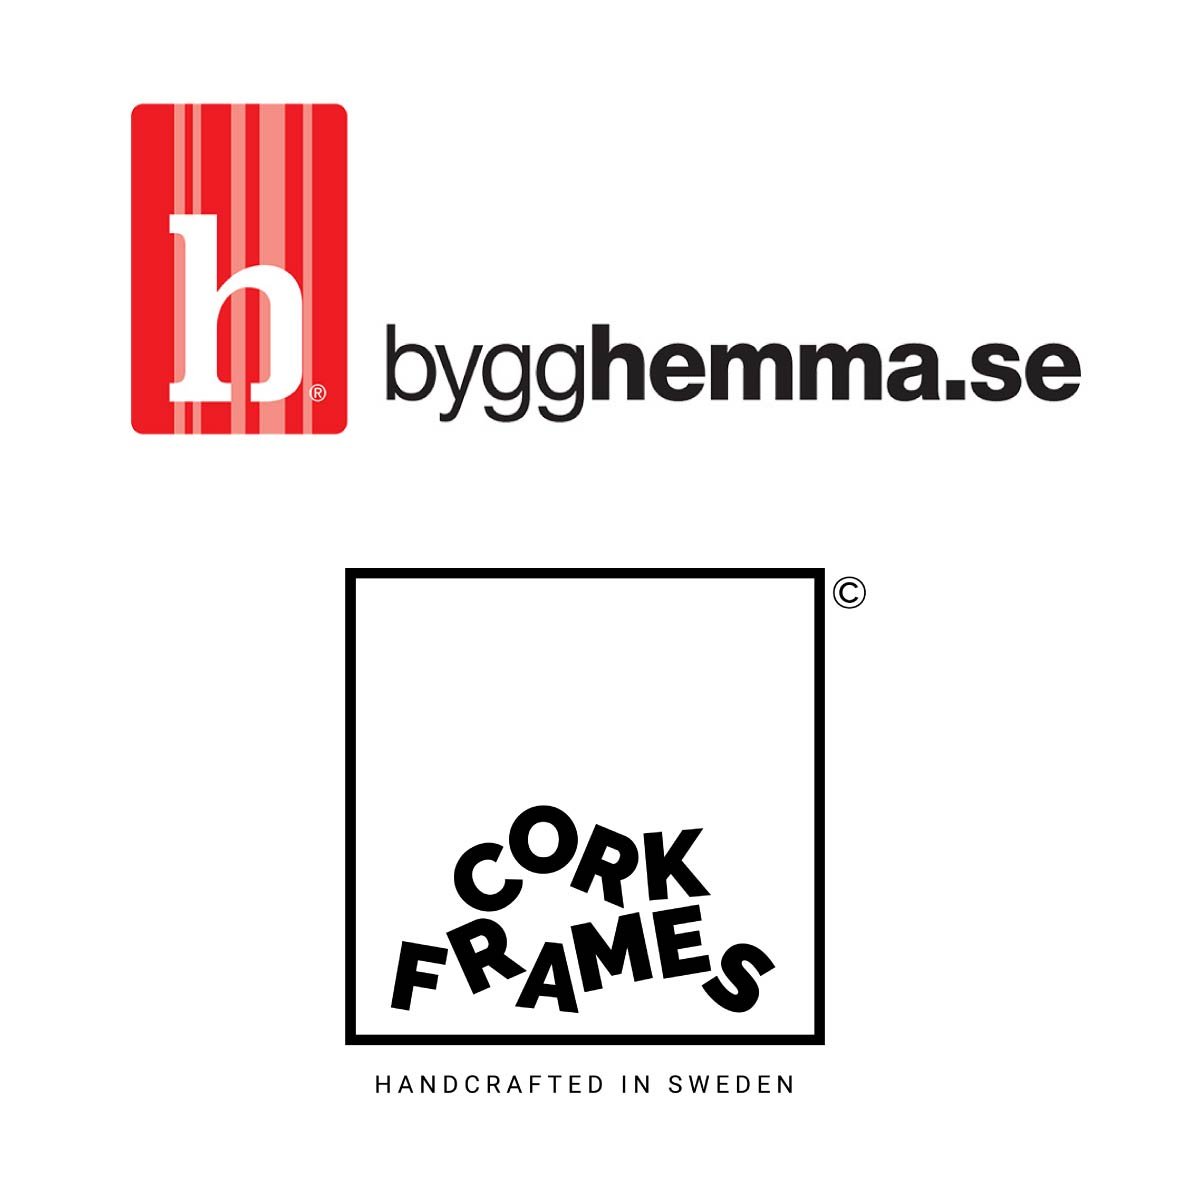 Corkframes Sweden AB enters partnership with Bygghemma.se - Corkframes.com